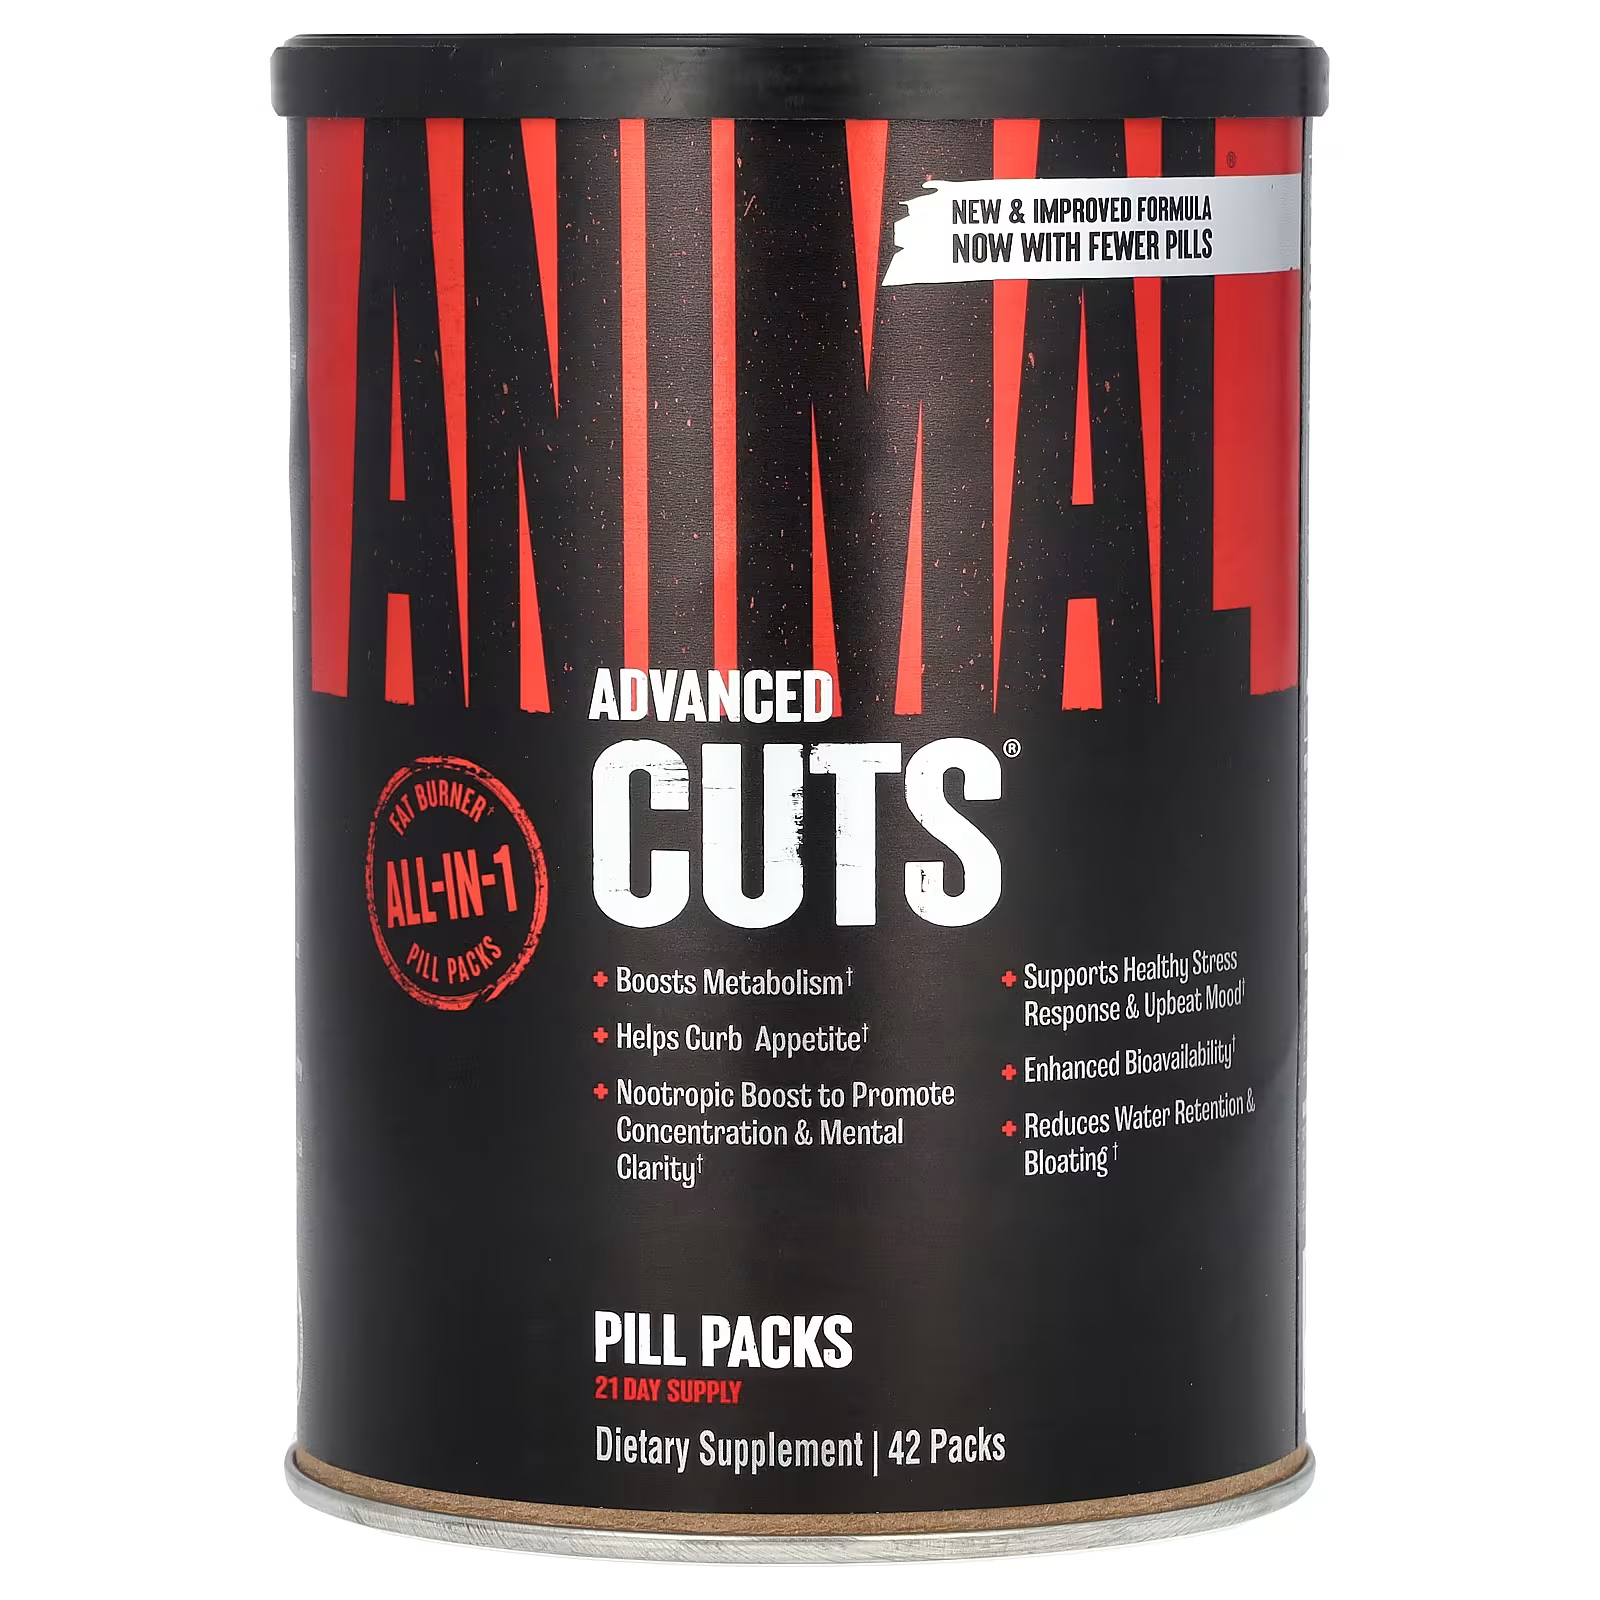 Таблетки Animal Advanced Cuts, 42 упаковки